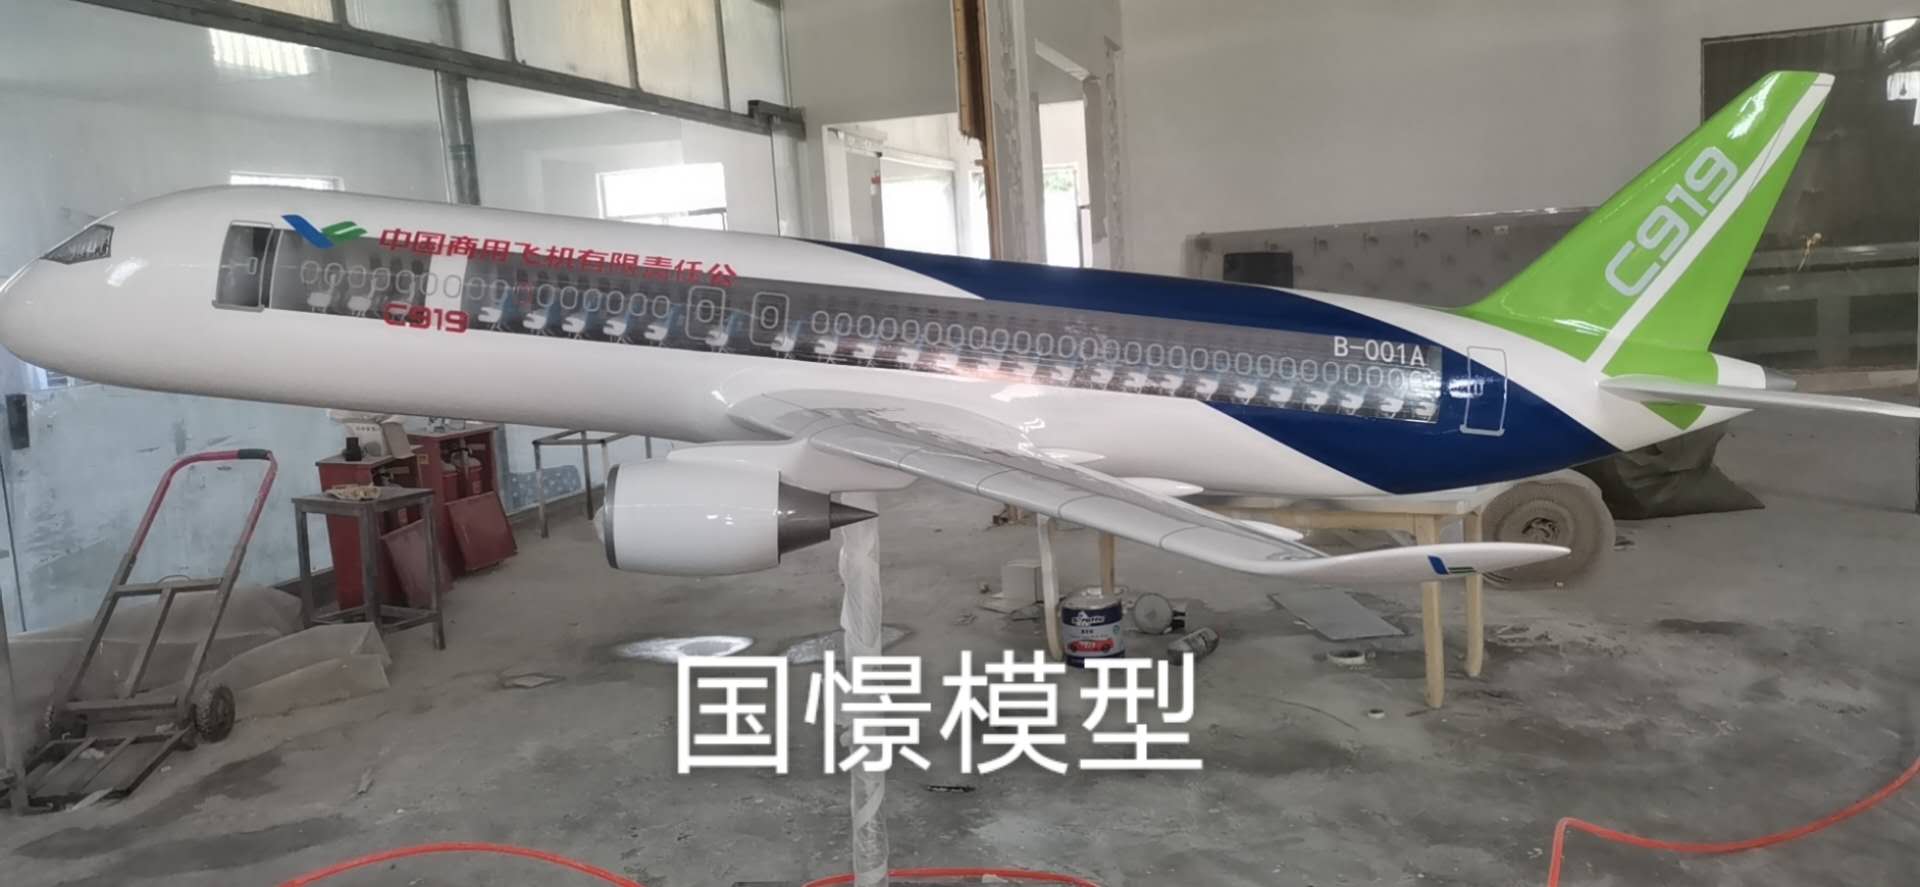 秦安县飞机模型